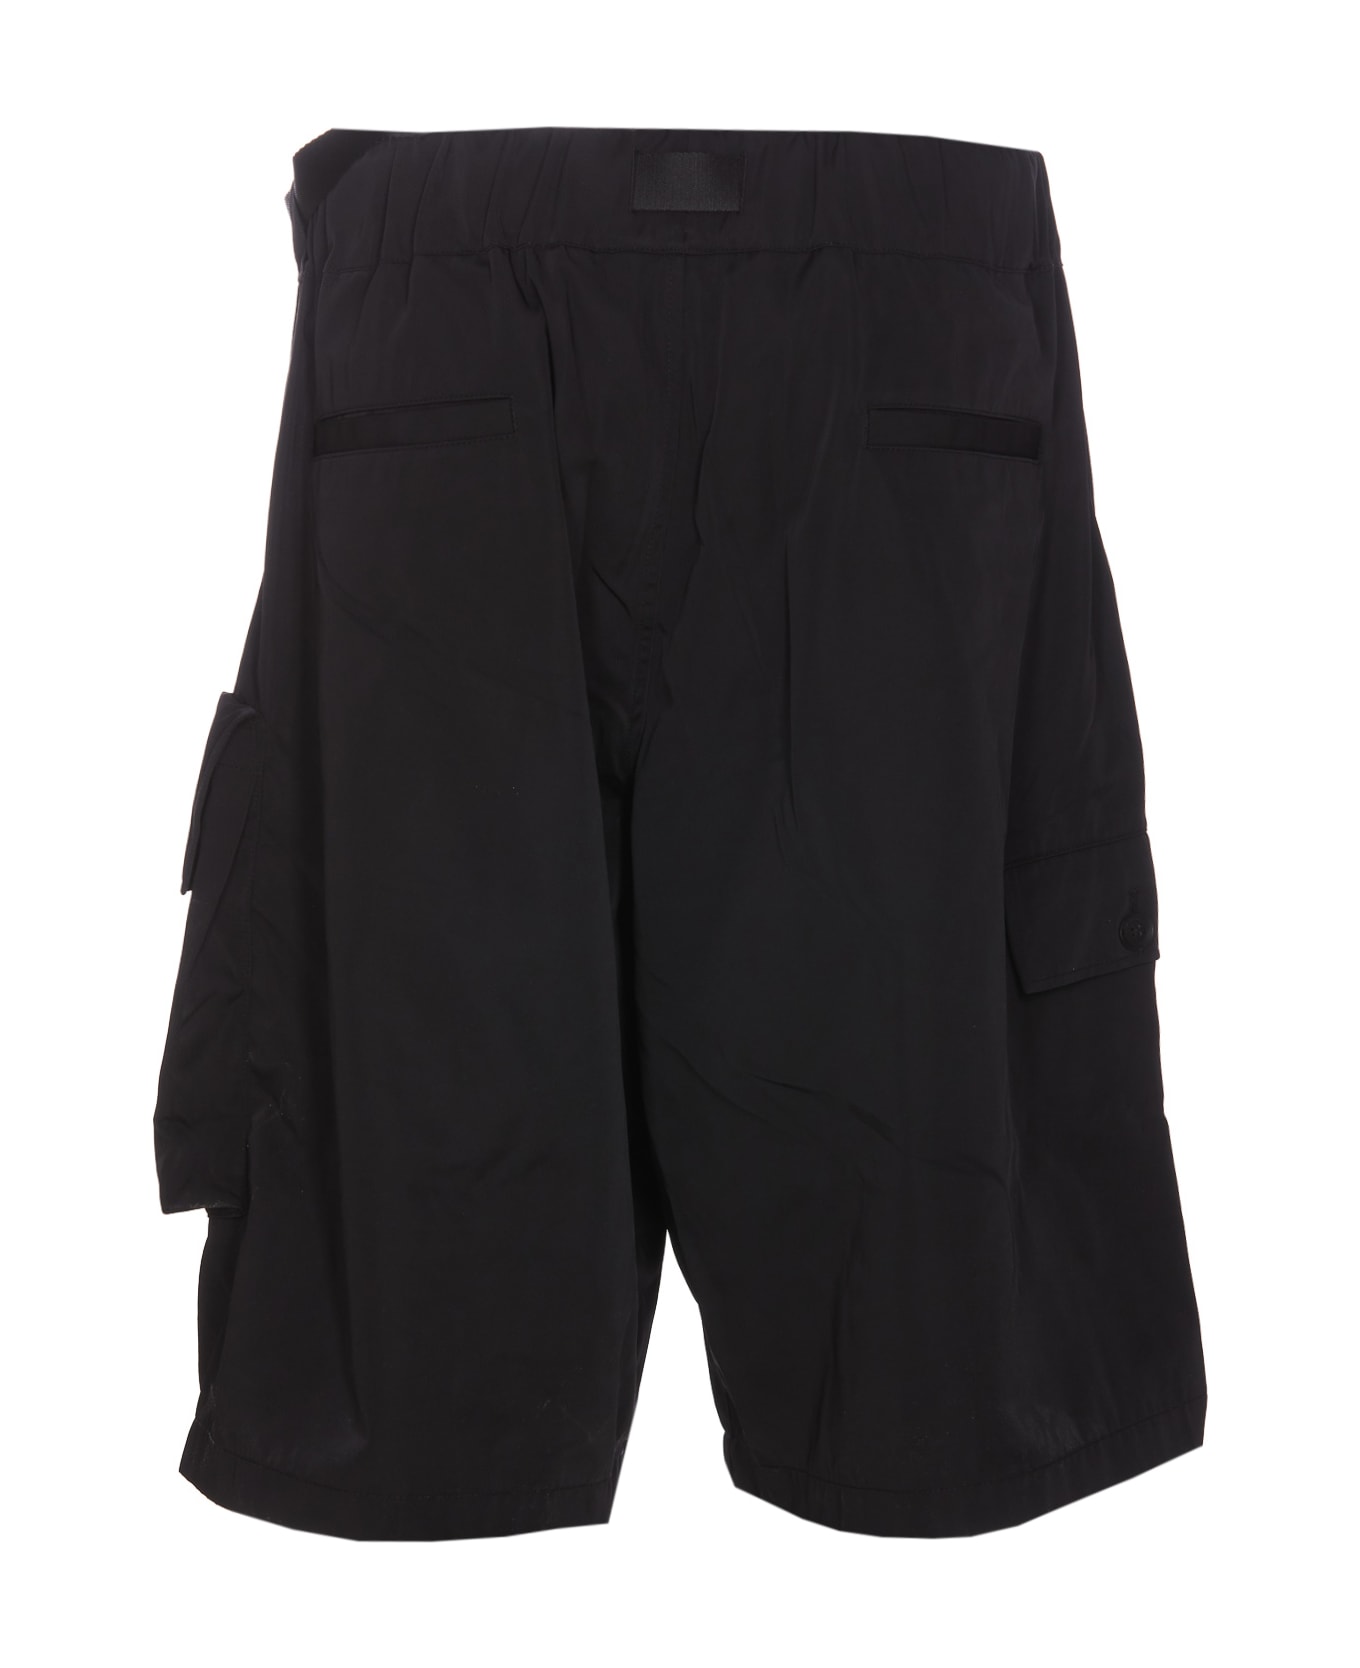 Y-3 Shorts - Black